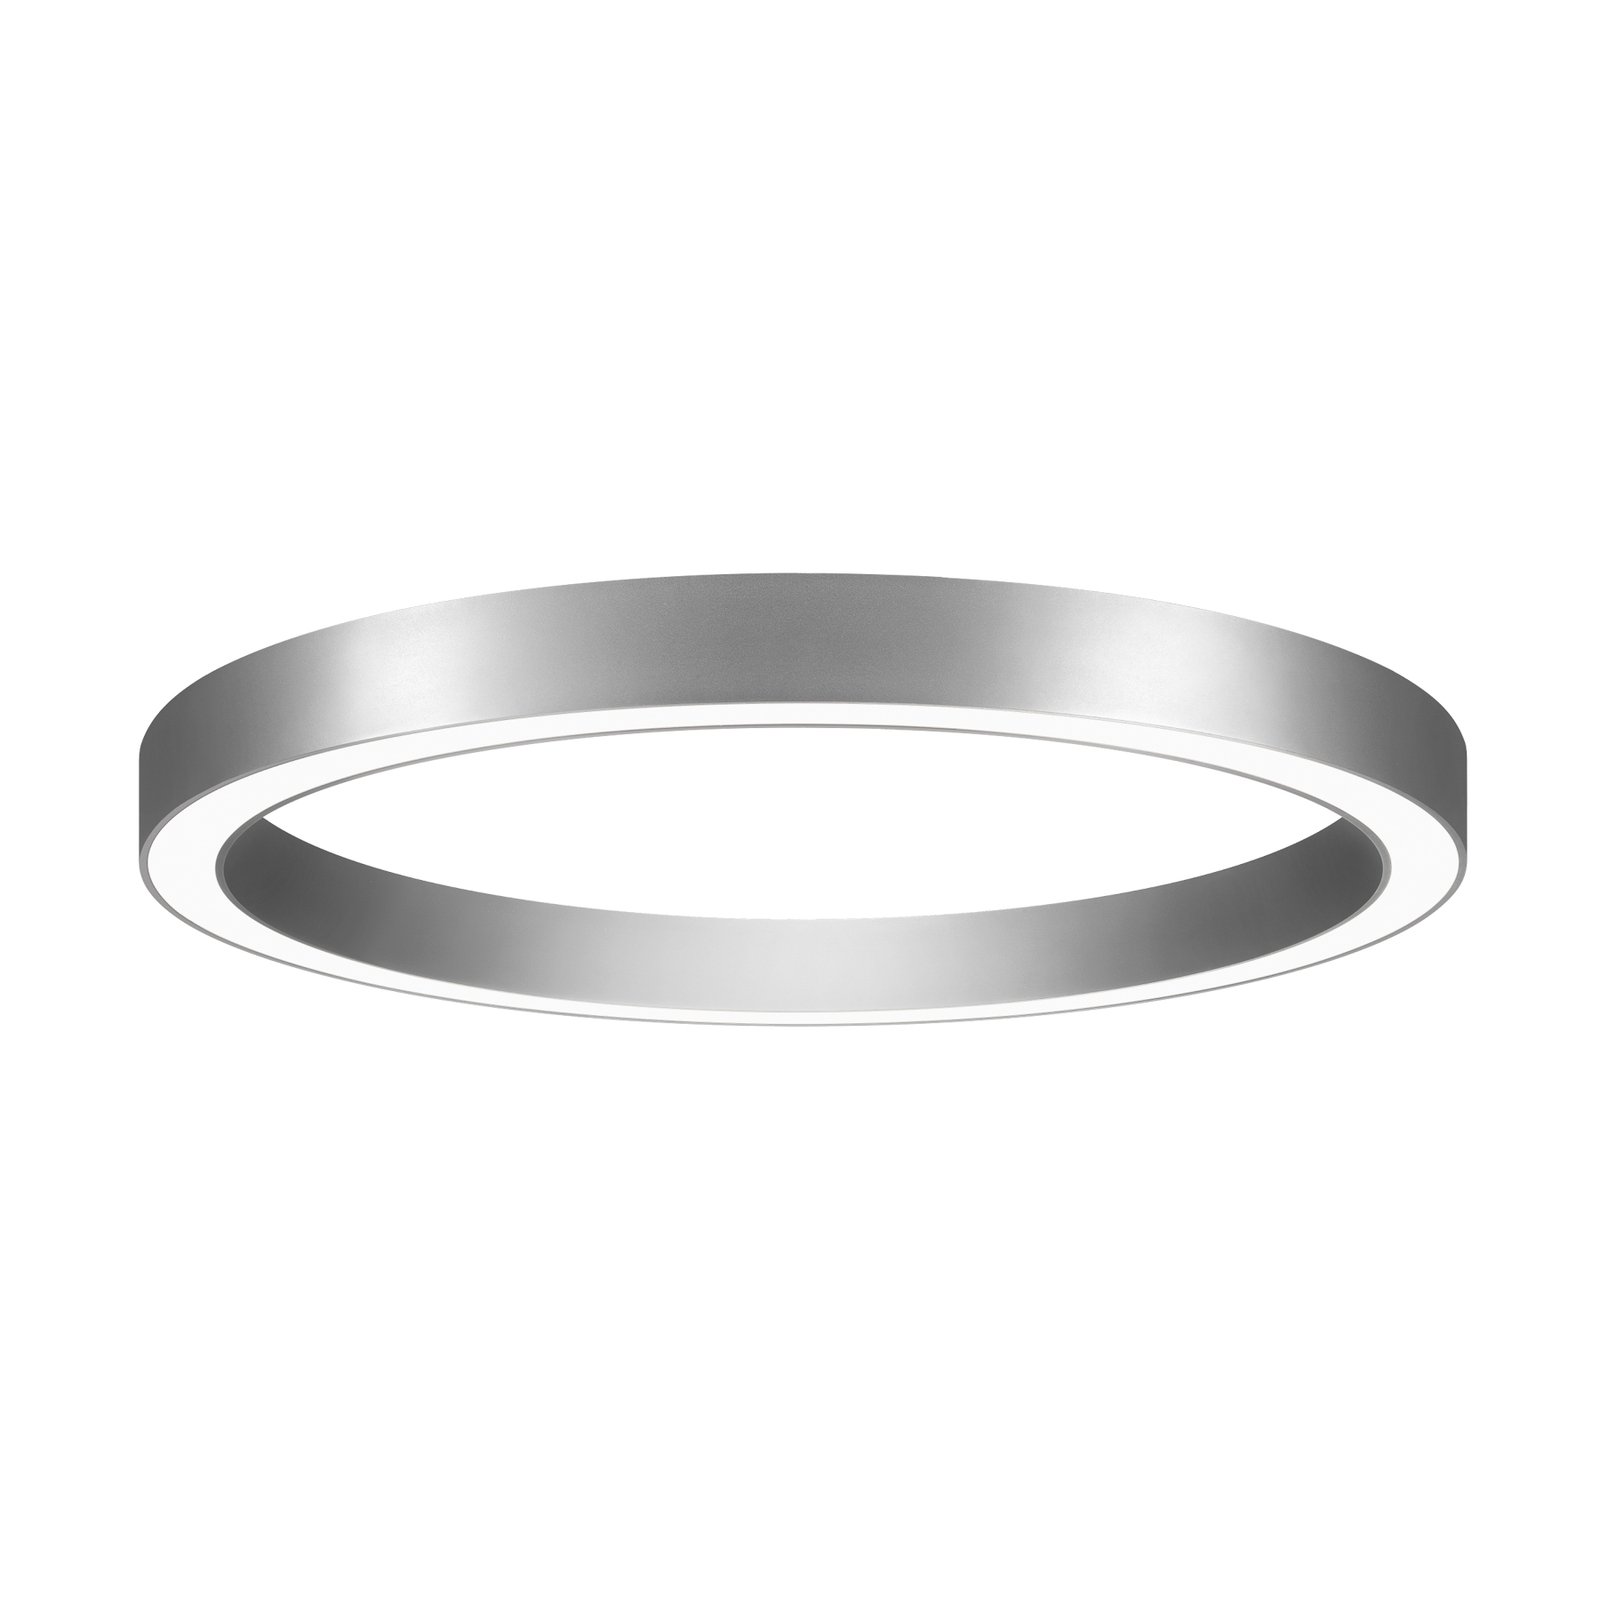 BRUMBERG Biro Cirkel Ring Ø 60cm, 40 W, aan/uit, zilver, 830